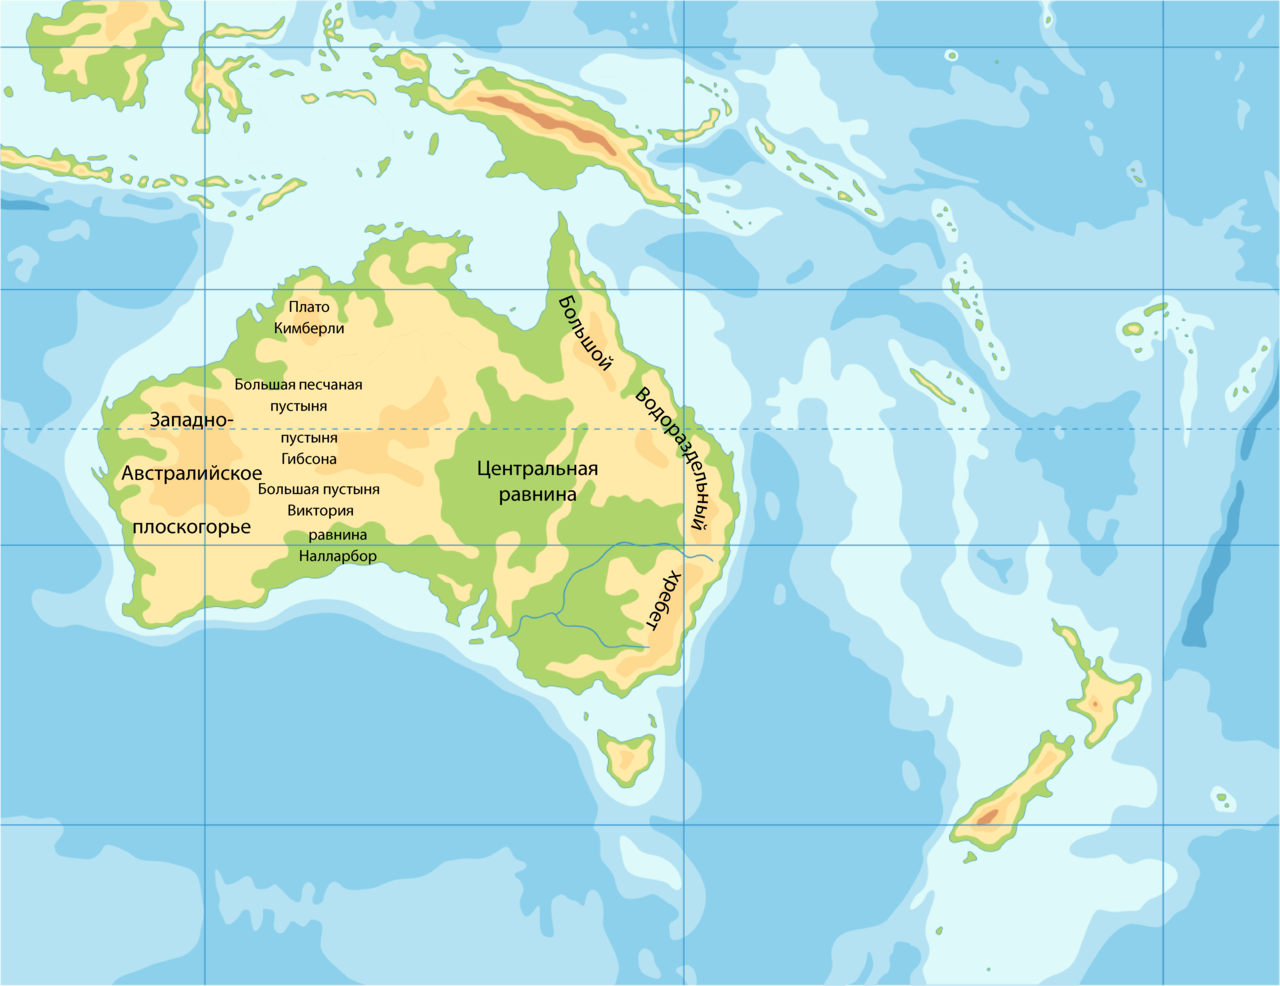 Формы рельефа Австралии на карте. Центральная равнина Австралии на карте контурной. Западно австралийское плоскогорье на карте Австралии. Западноавстралийское пласкогорье на карте.